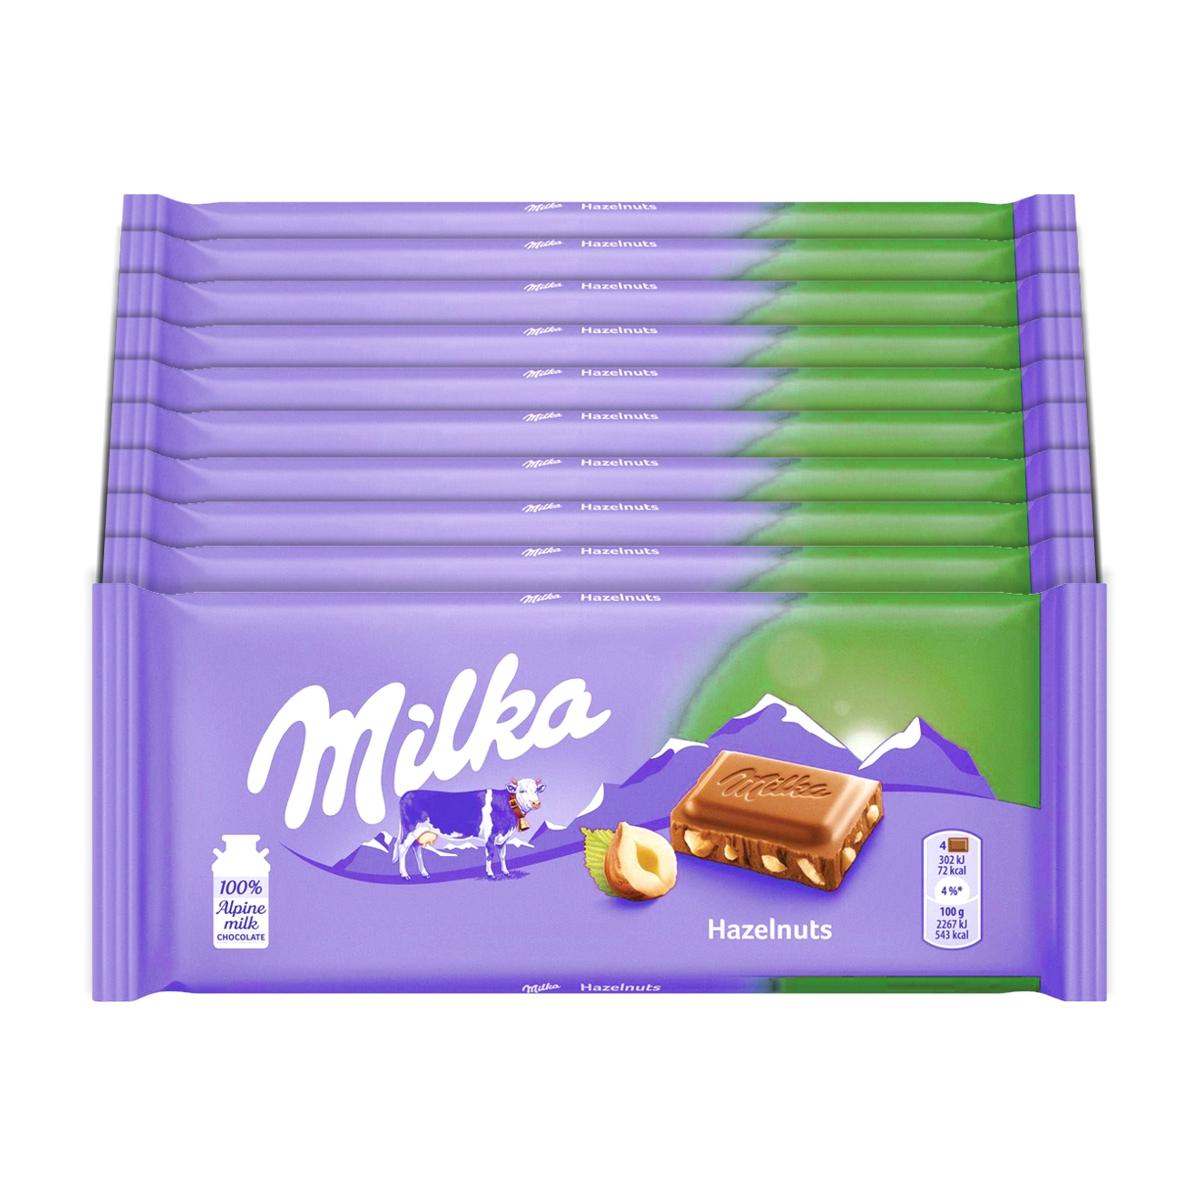 Selected image for Milka Čokolada sa lešnicima, 80g, 10 komada